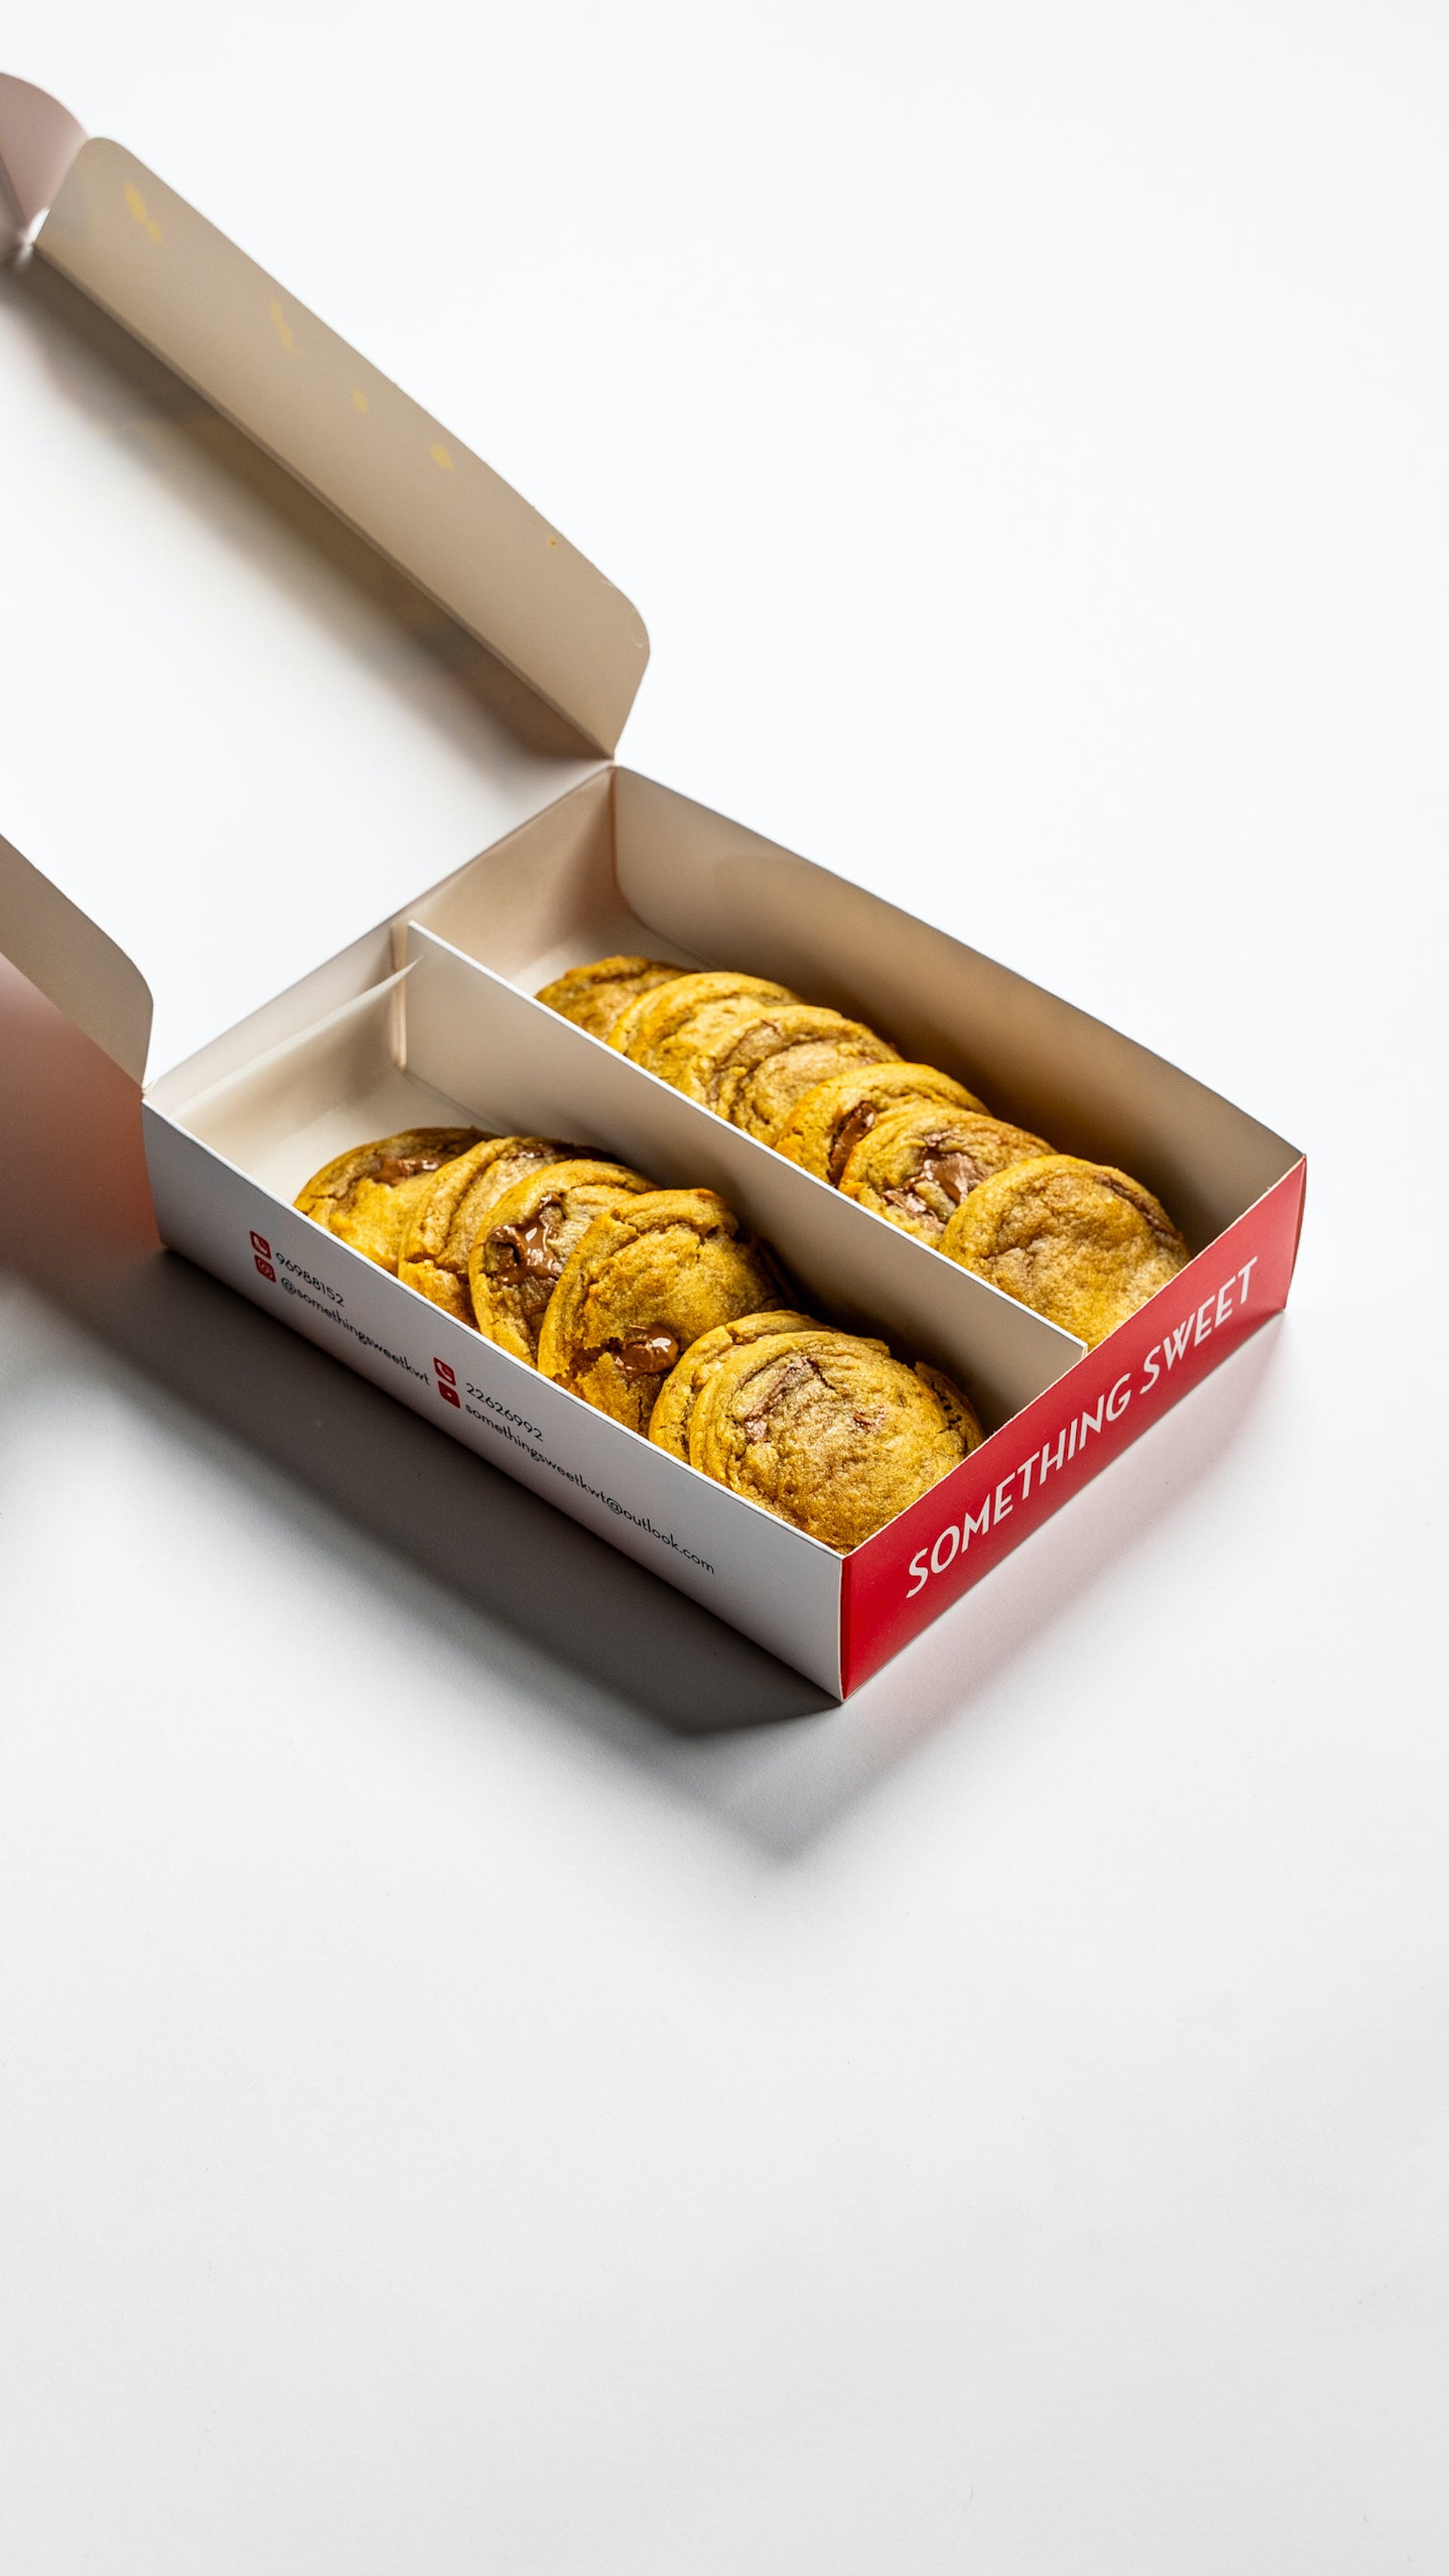 Box of cookies | Source: Pexels